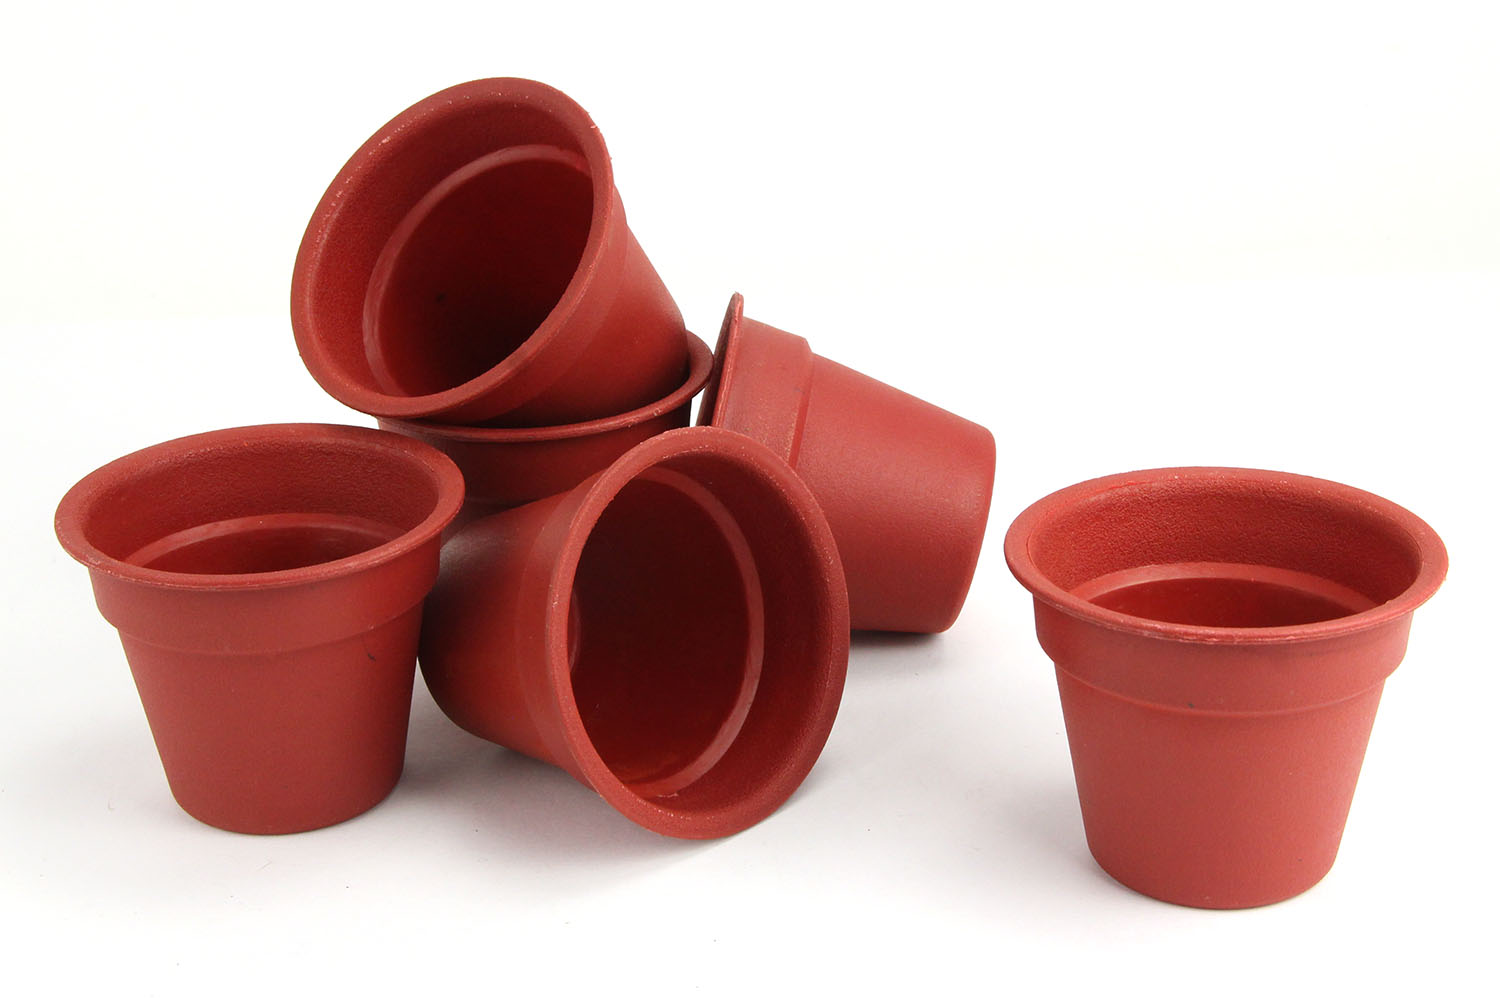 Achète ton Les pots en plastique ou en terre cuite sont-ils meilleurs pour  les plantes d'intérieur ?